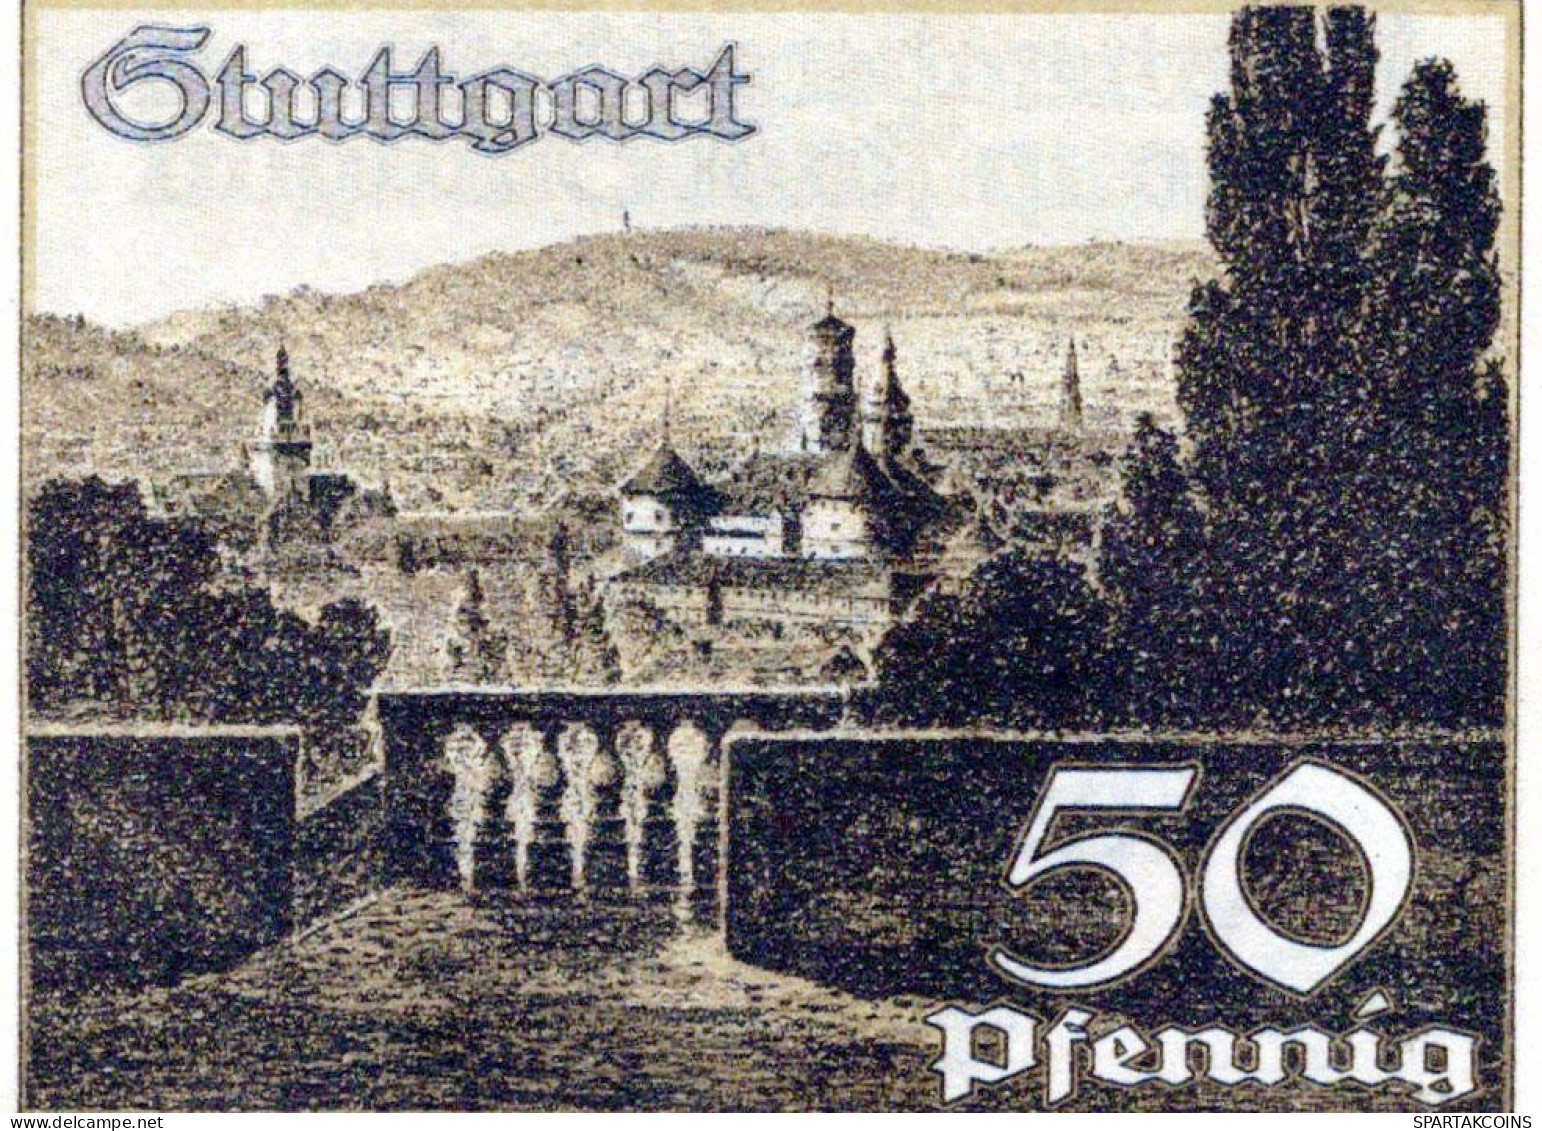 50 PFENNIG 1921 Stadt STUTTGART Württemberg UNC DEUTSCHLAND Notgeld #PC437 - [11] Local Banknote Issues